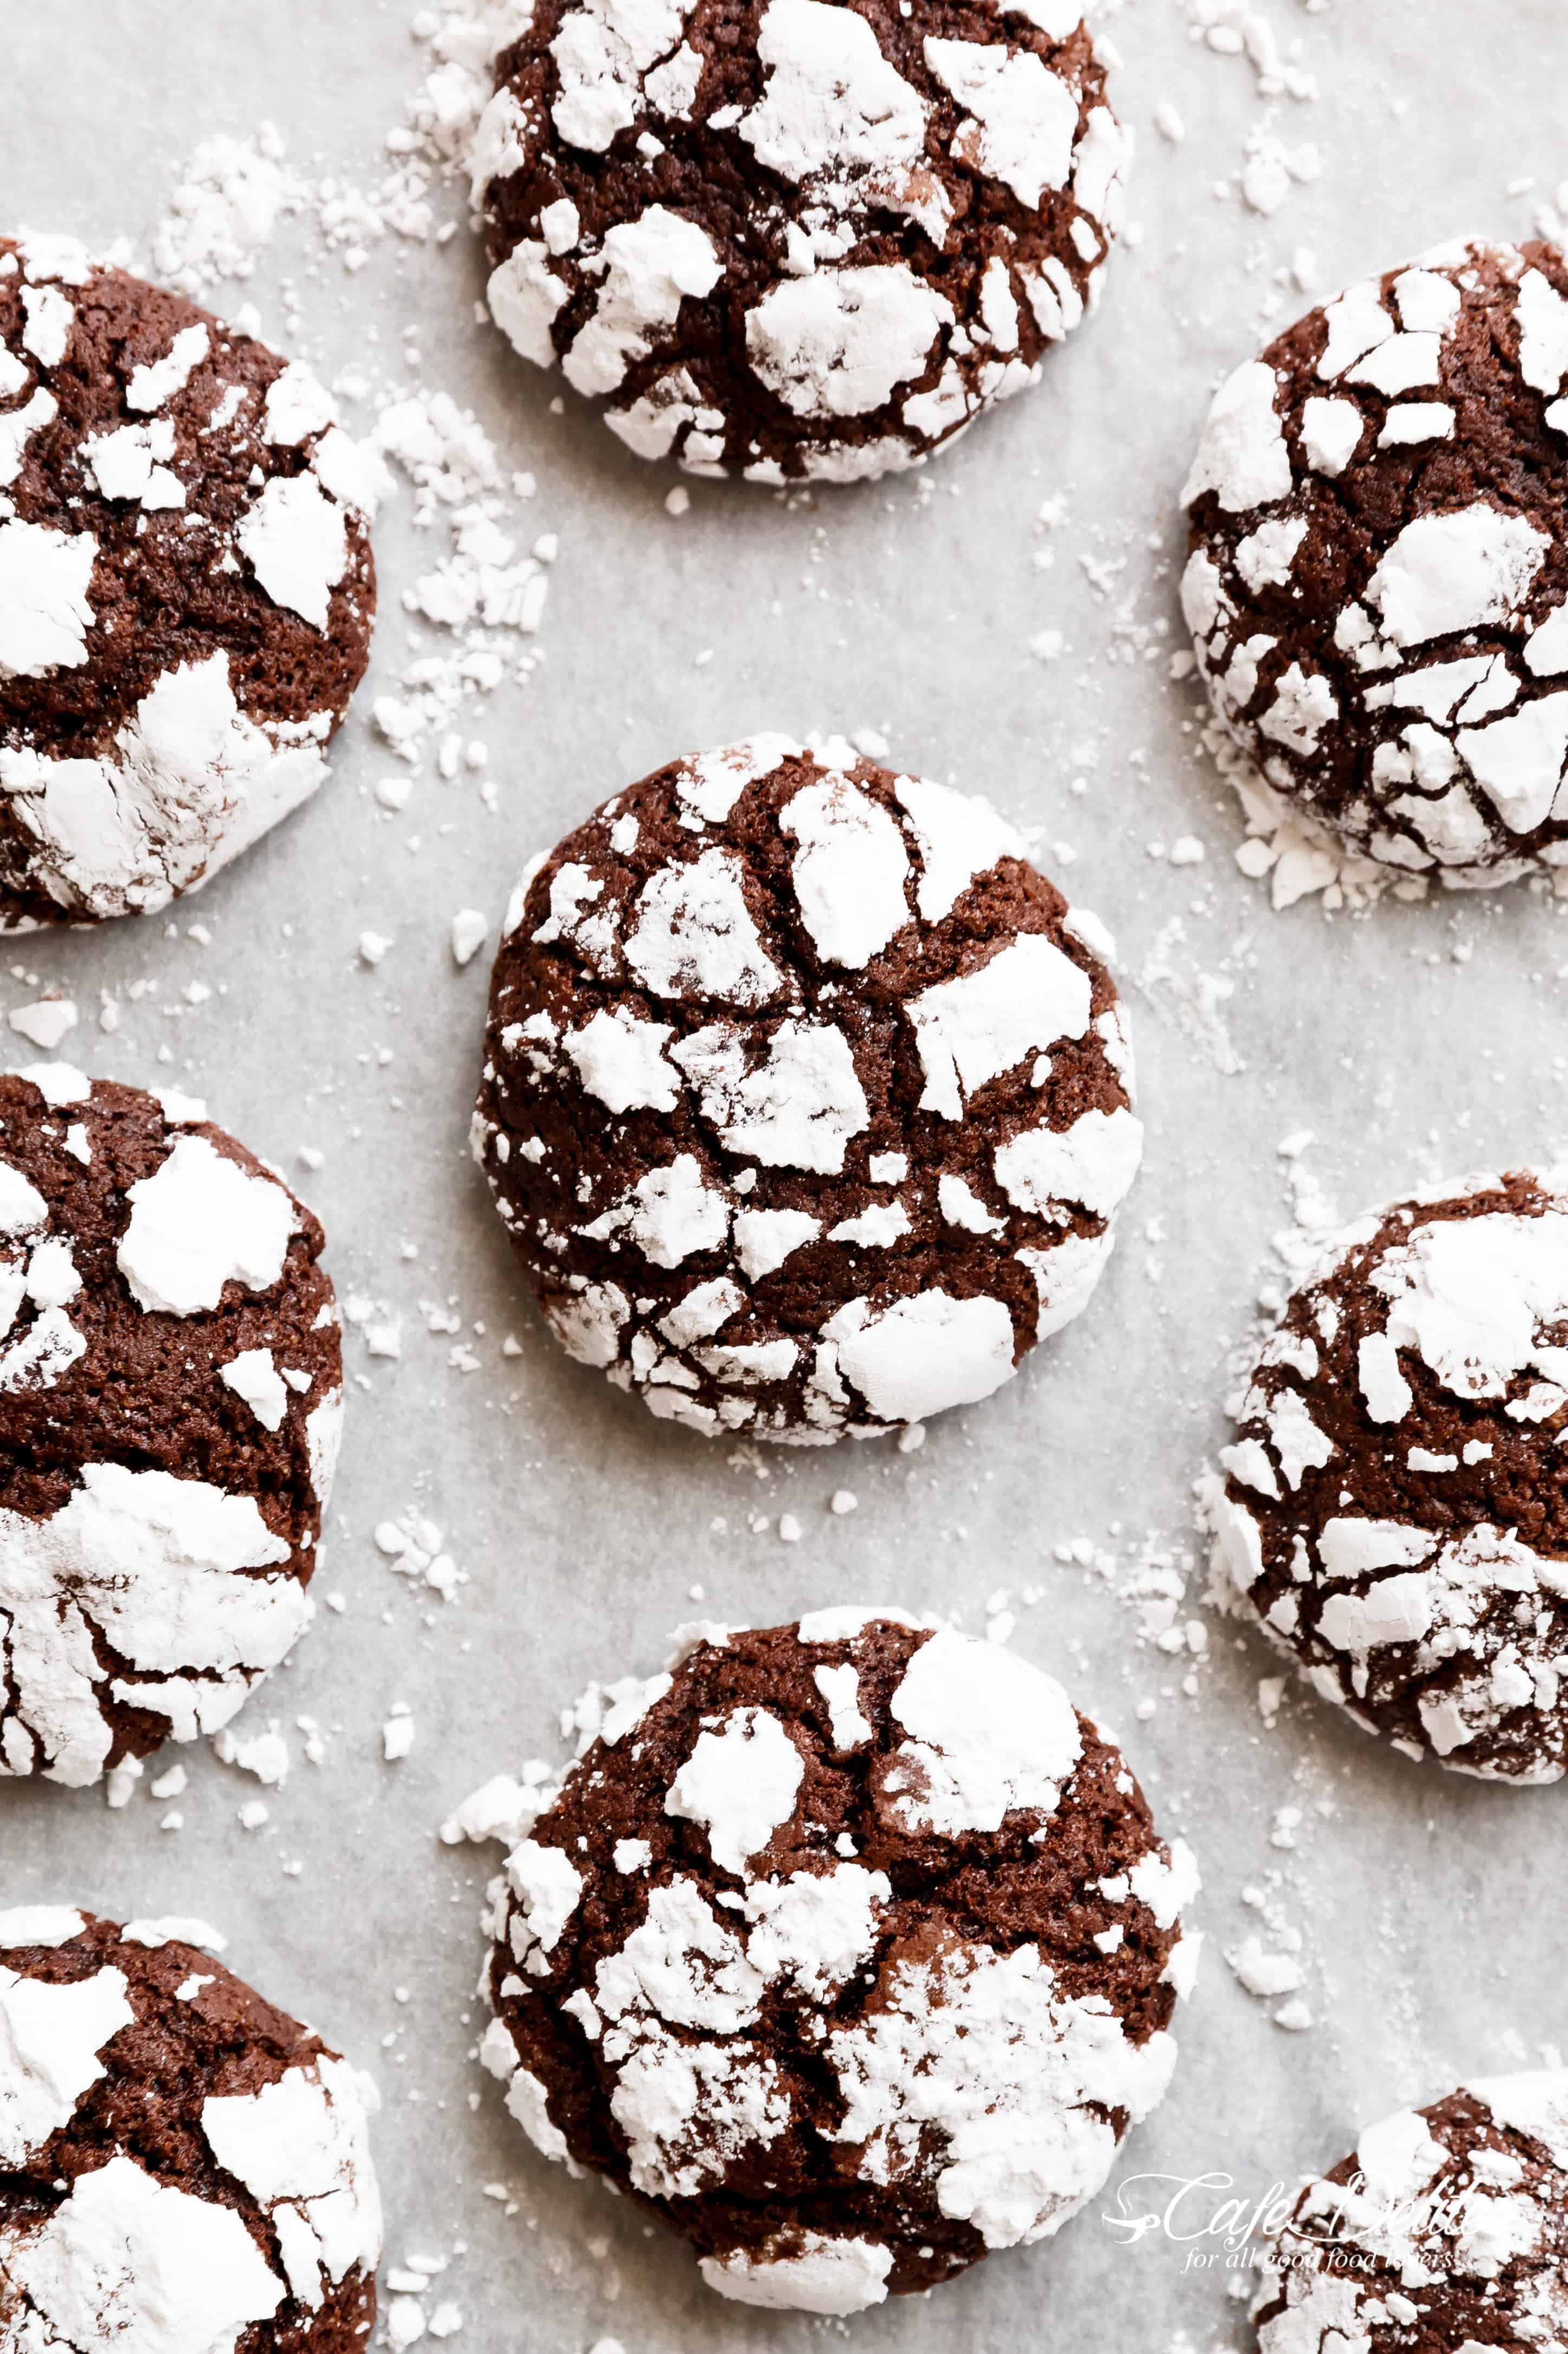 Fudgy Chocolate Crinkle Cookiesは、中心部のブラウニーの食感と外側のクッキーのサクサク感がたまらない一品です。 私たちのお気に入りのクリスマスクッキーのひとつです。 1枚あたりのカロリーはわずか88kcalです。